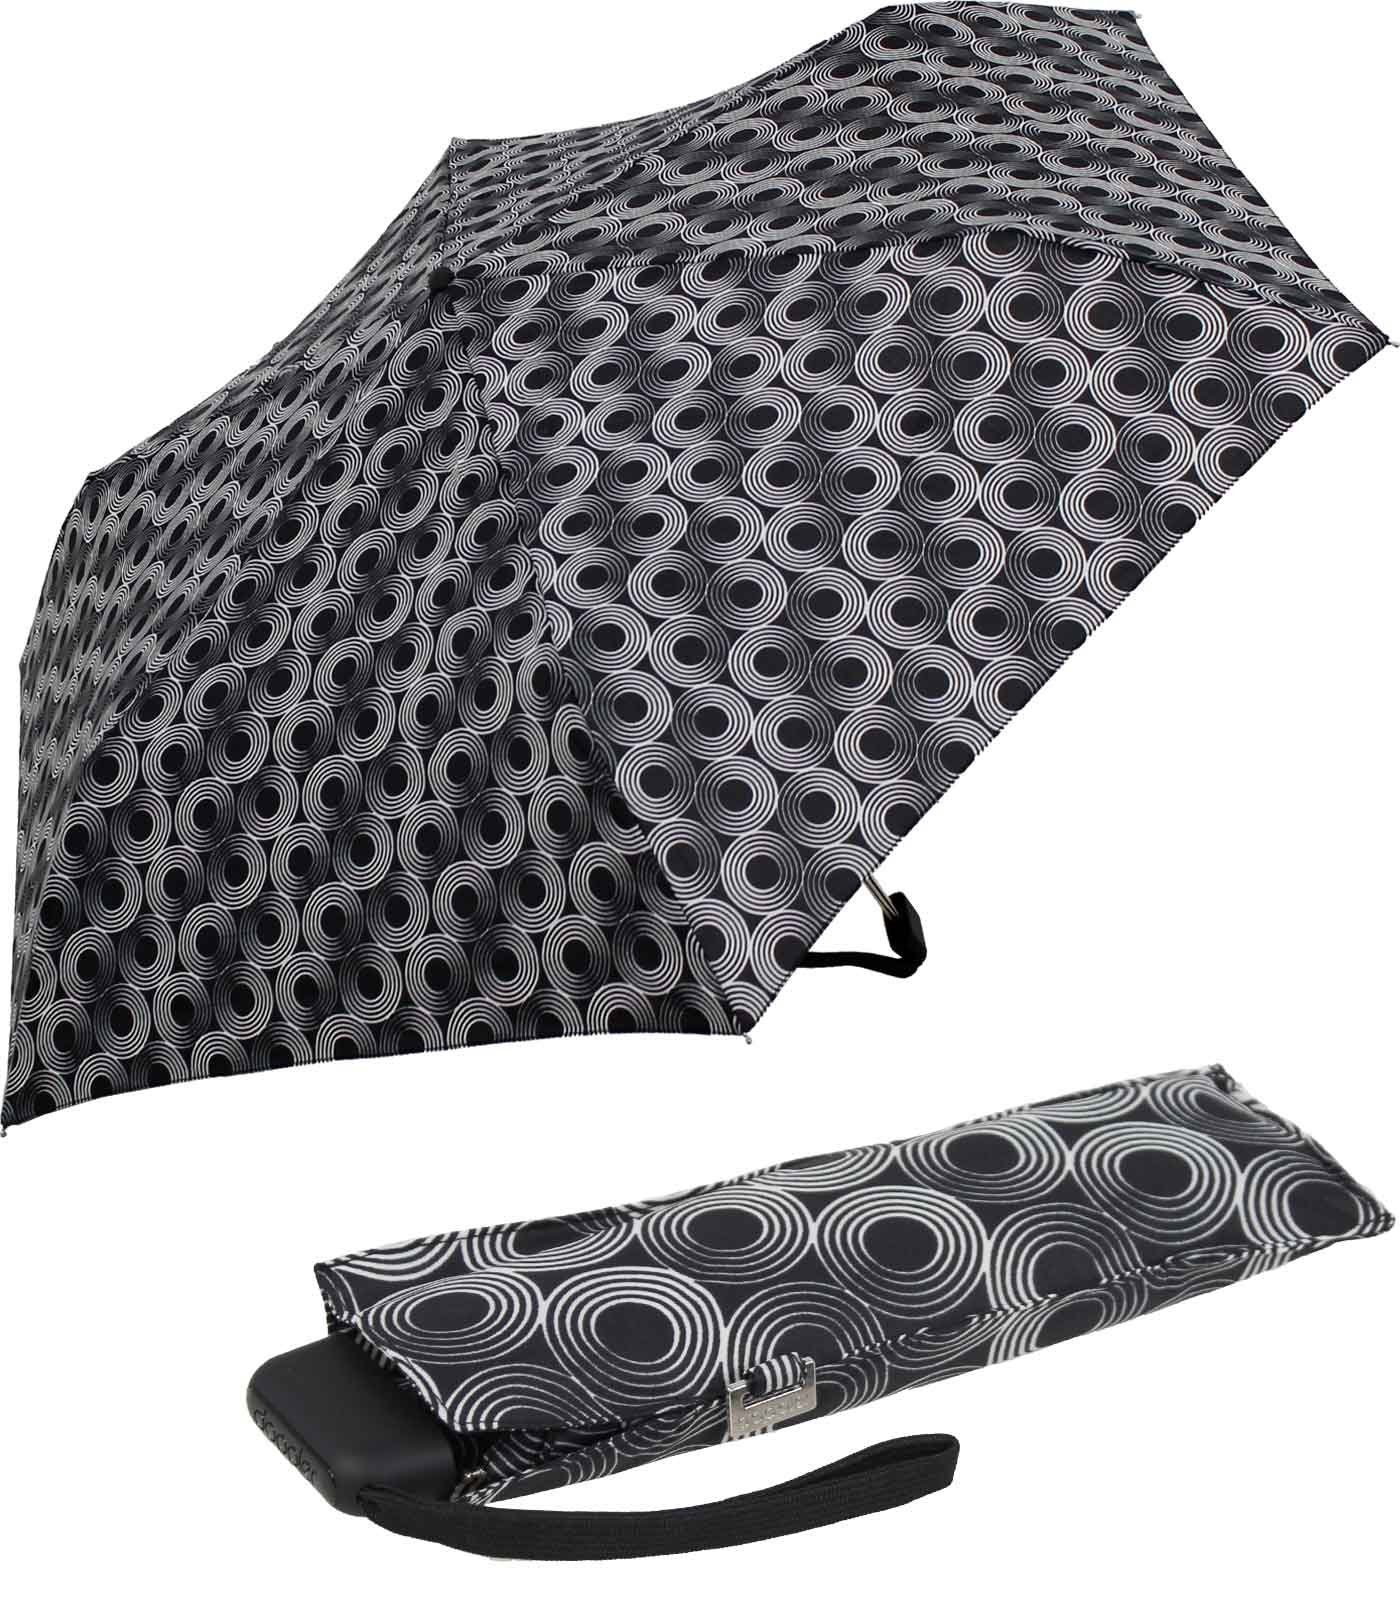 doppler® Begleiter für Schirm überall dieser ein Tasche, Platz und schwarz jede treue flacher findet Taschenregenschirm leichter